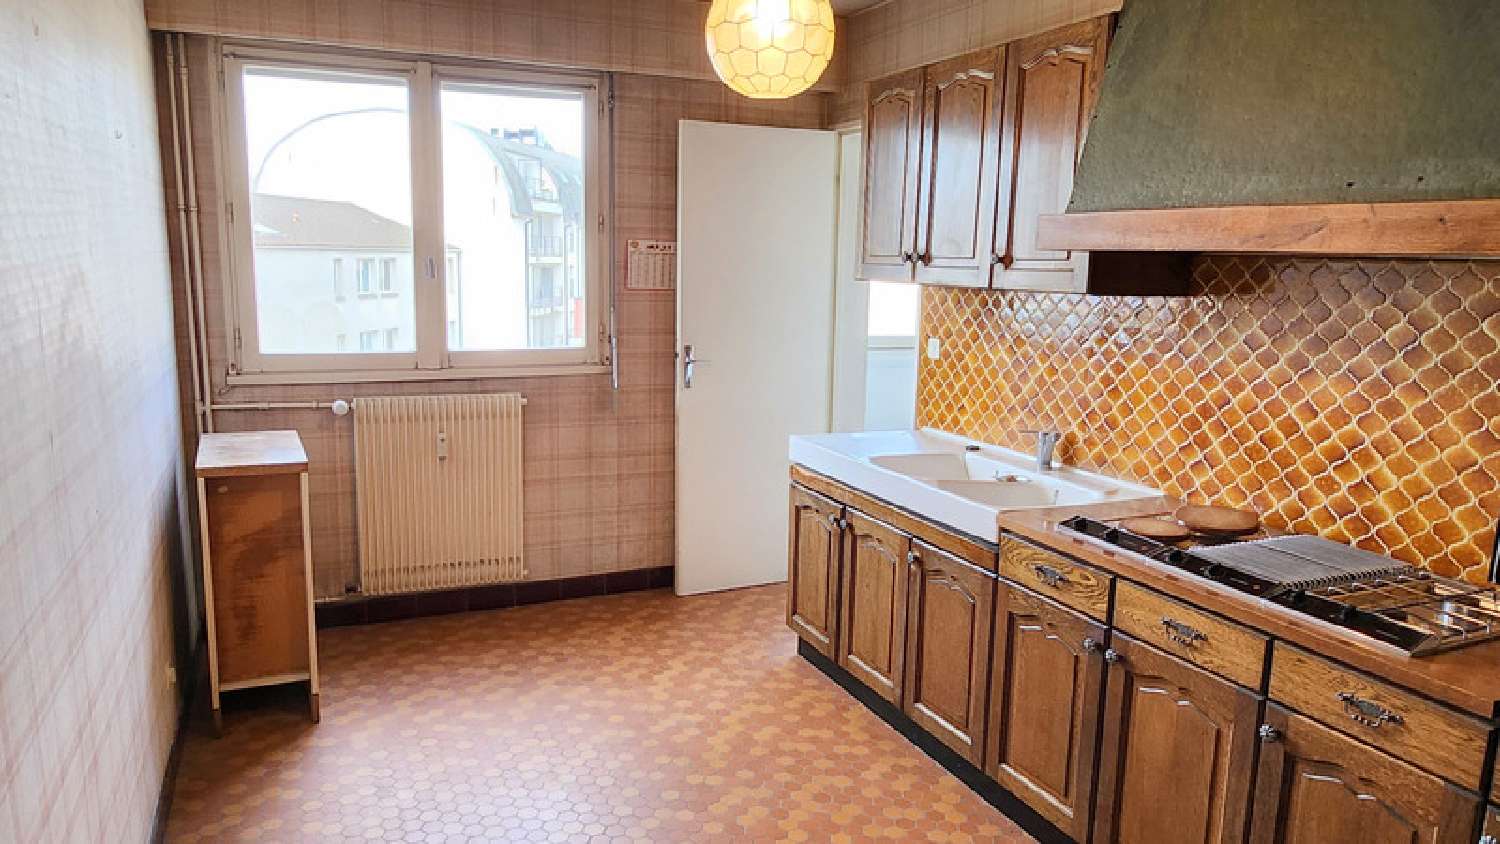  for sale apartment Limoges Haute-Vienne 4